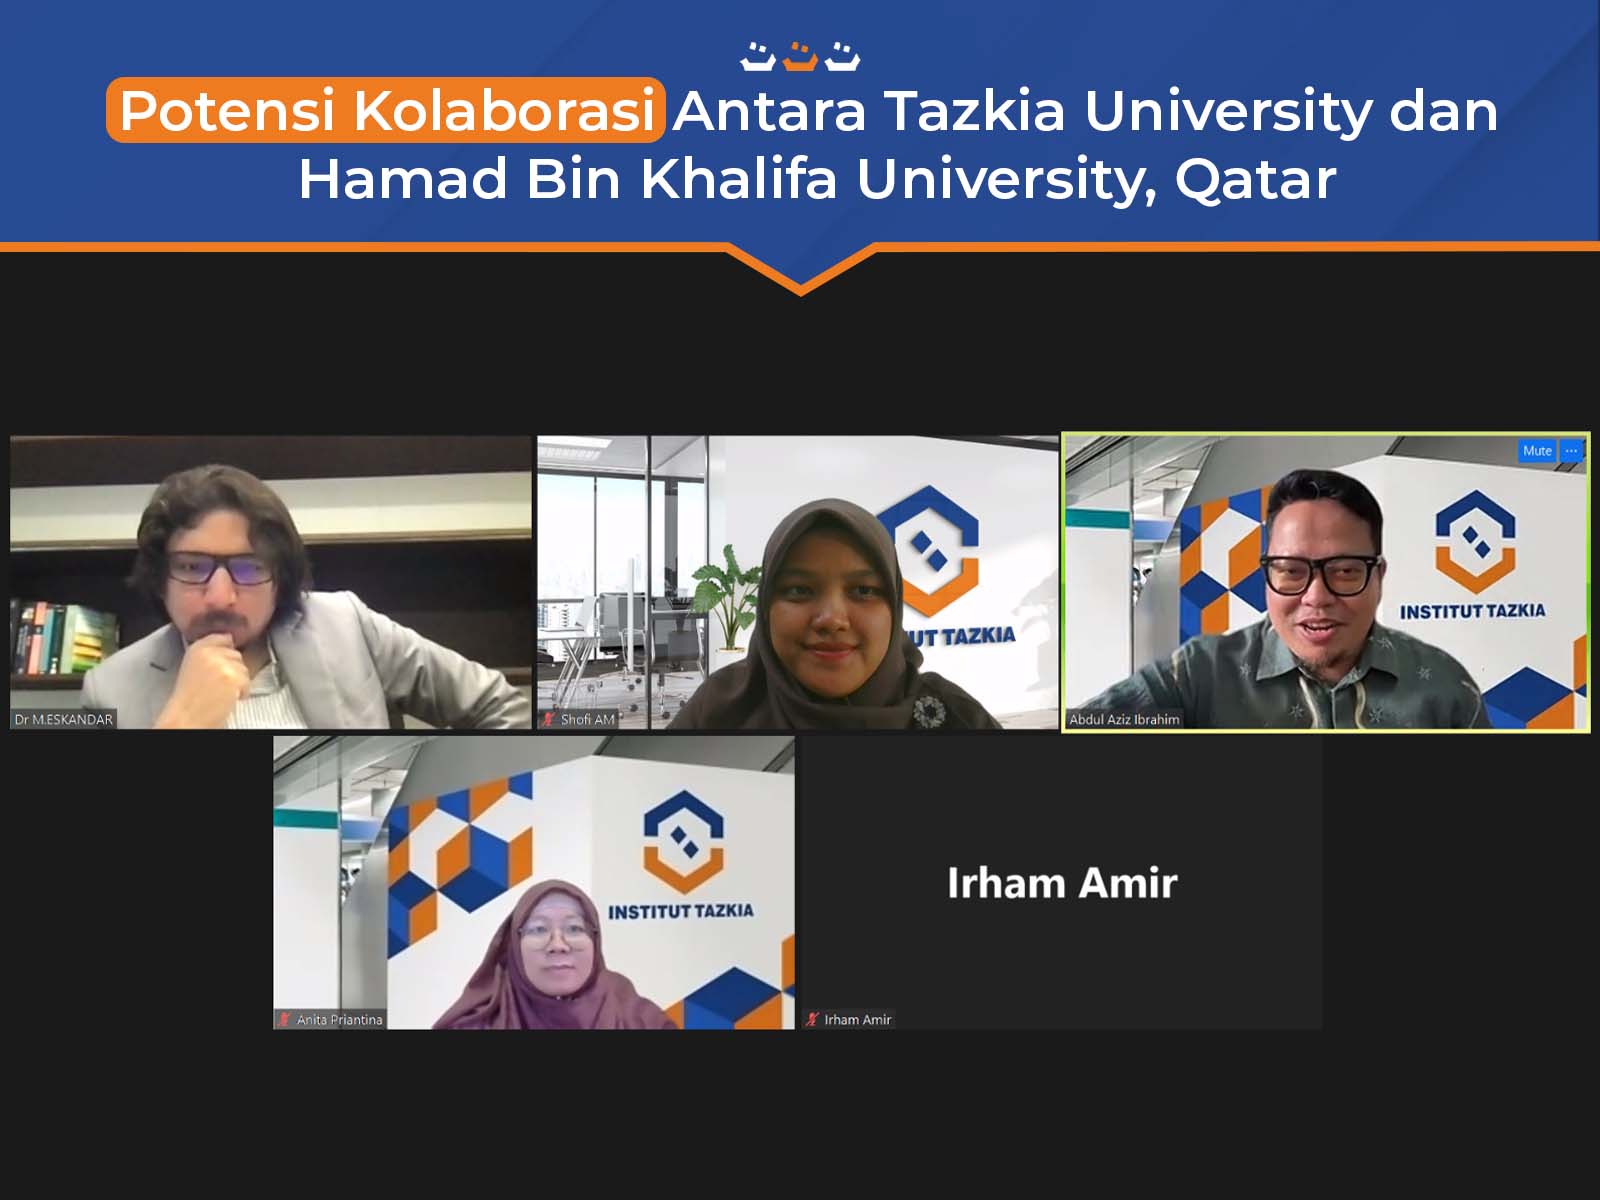 Potensi Kolaborasi Antara Tazkia University dan Hamad Bin Khalifa University, Qatar